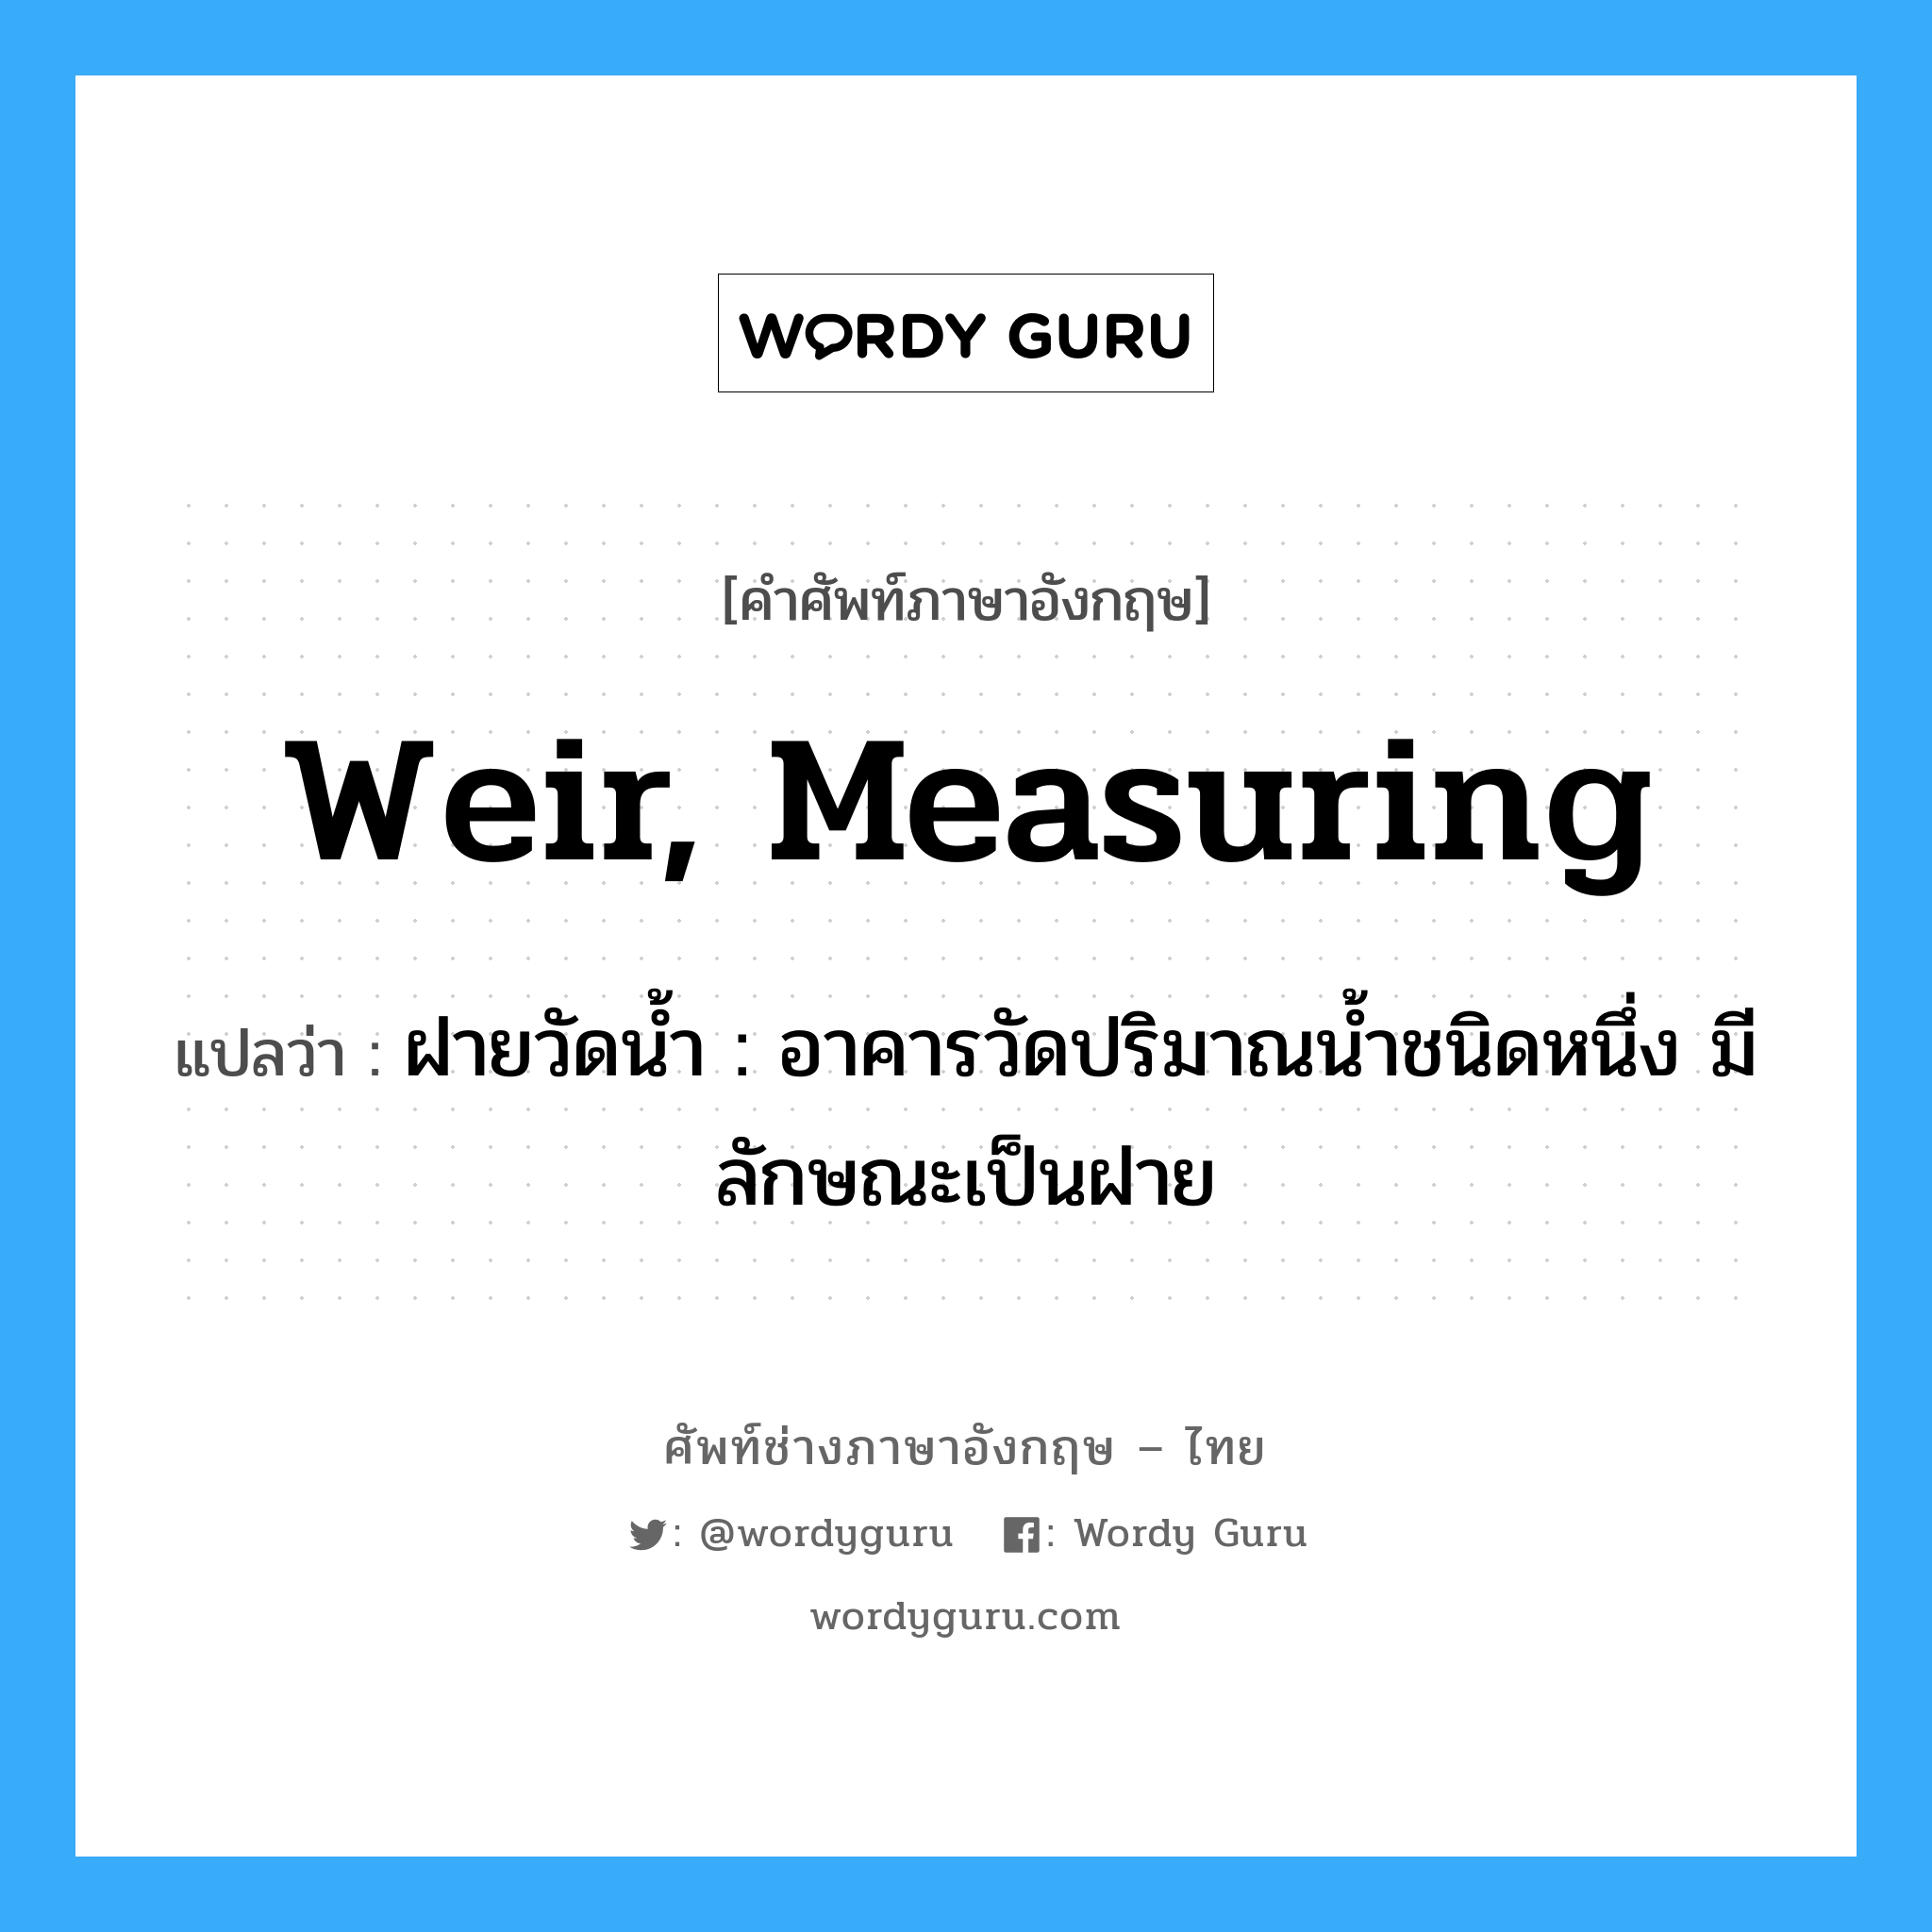 weir, measuring แปลว่า?, คำศัพท์ช่างภาษาอังกฤษ - ไทย weir, measuring คำศัพท์ภาษาอังกฤษ weir, measuring แปลว่า ฝายวัดน้ำ : อาคารวัดปริมาณน้ำชนิดหนึ่ง มีลักษณะเป็นฝาย